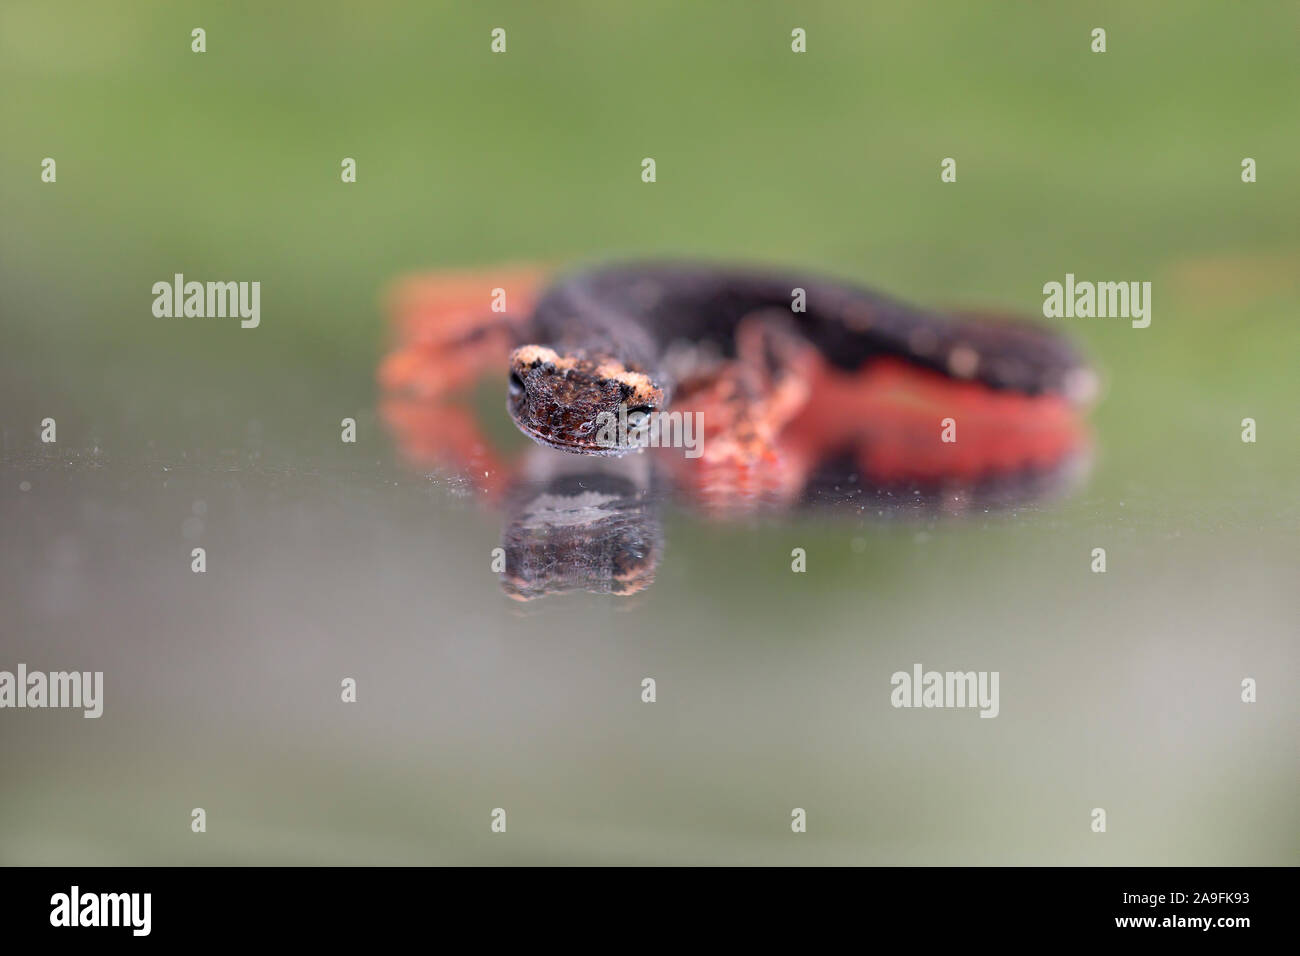 Spectacled salamander Foto Stock